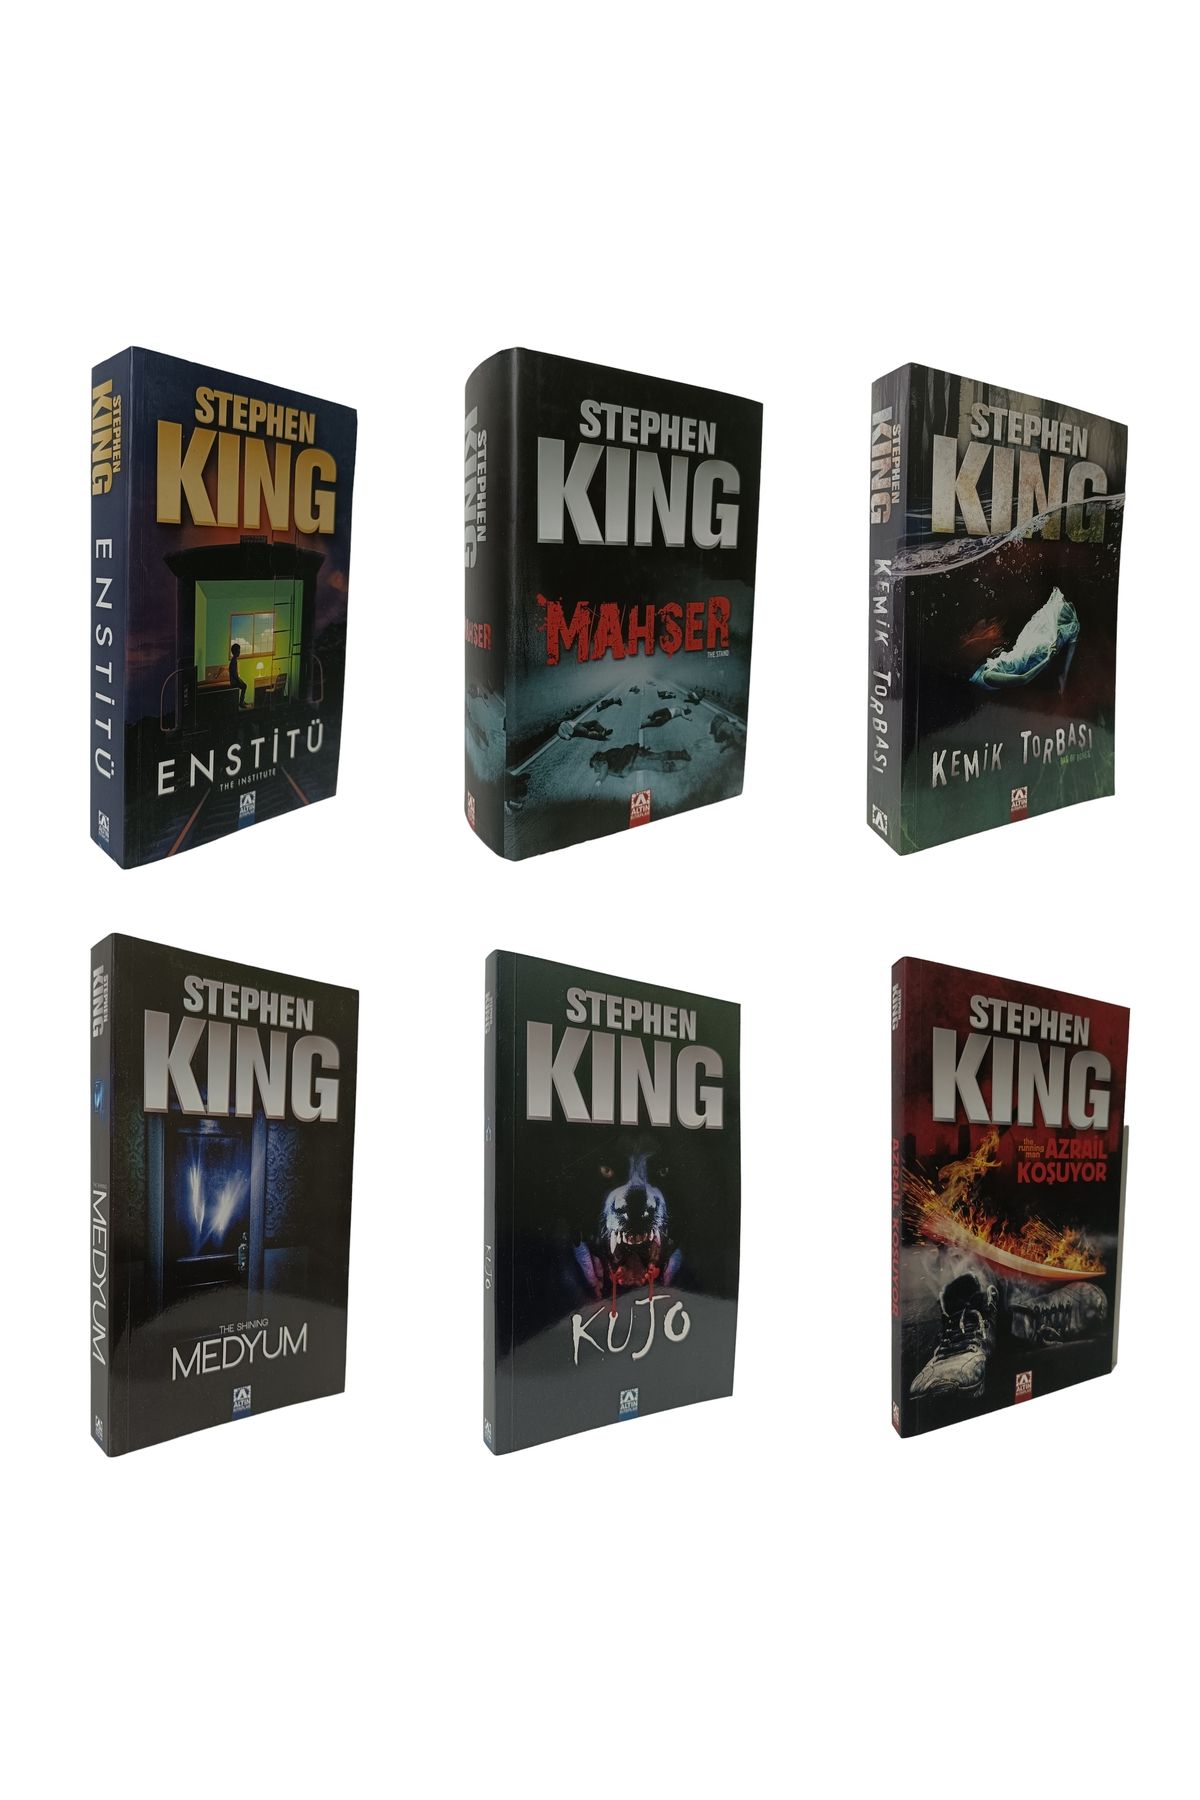 Altın Kitaplar Stephen King 6 Kitap Mahşer (Ciltli) Enstitü Kemik Torbası Medyum Kujo Azrail Koşuyor